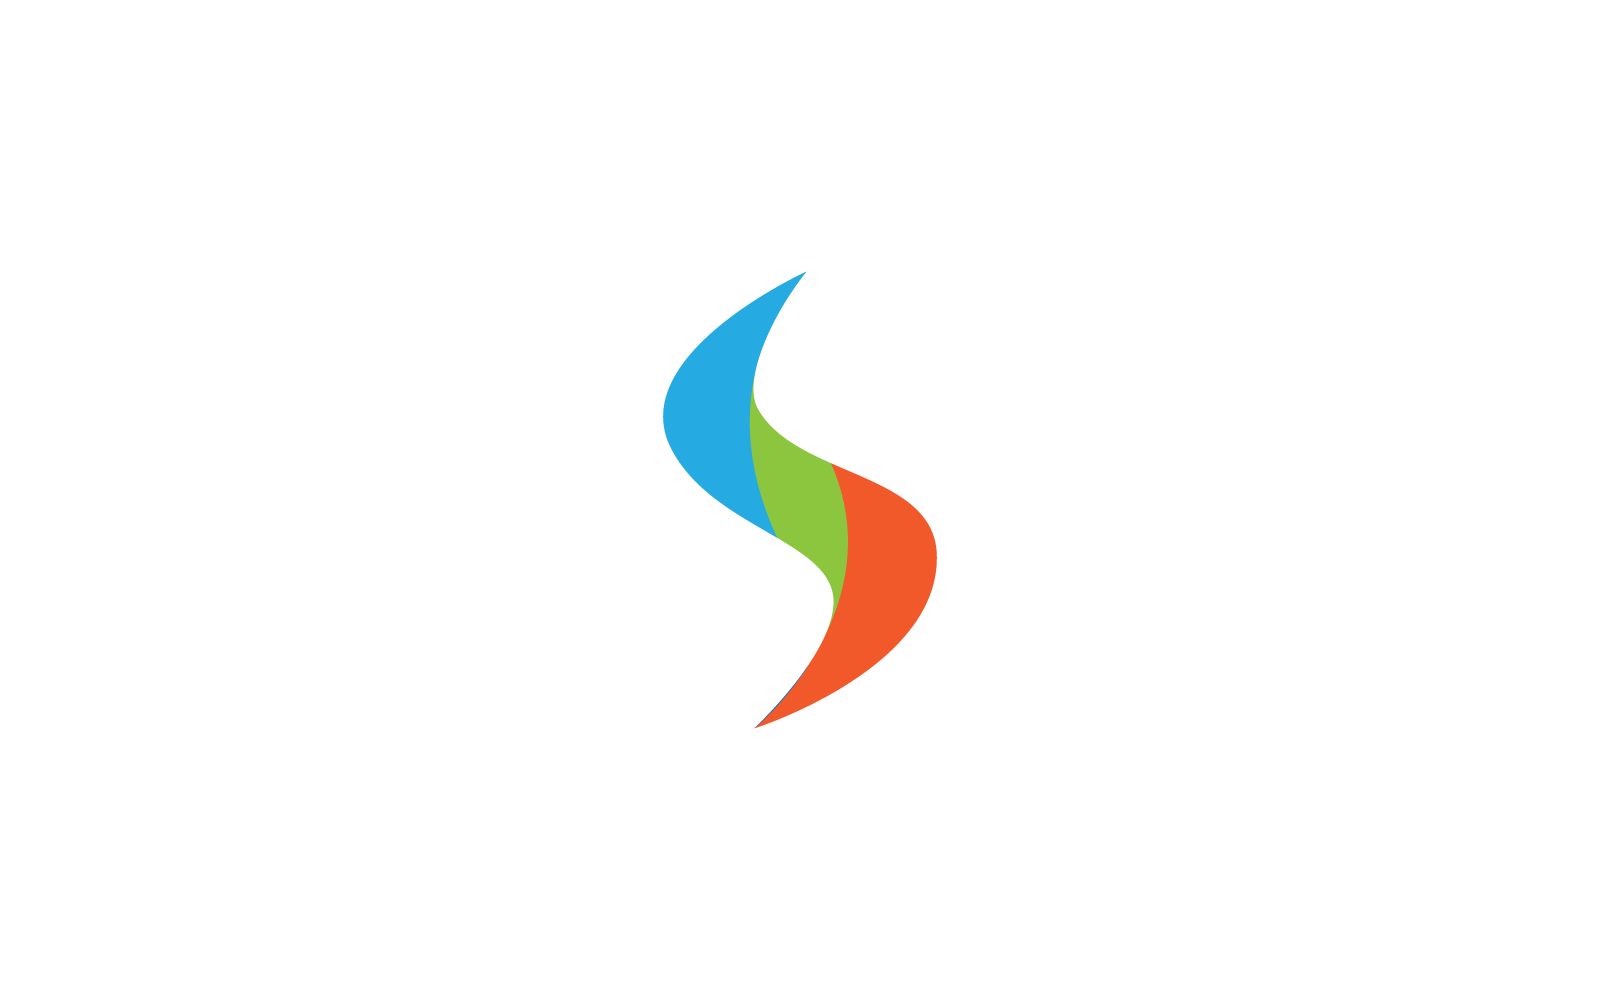 S letter logo design vector illustration template